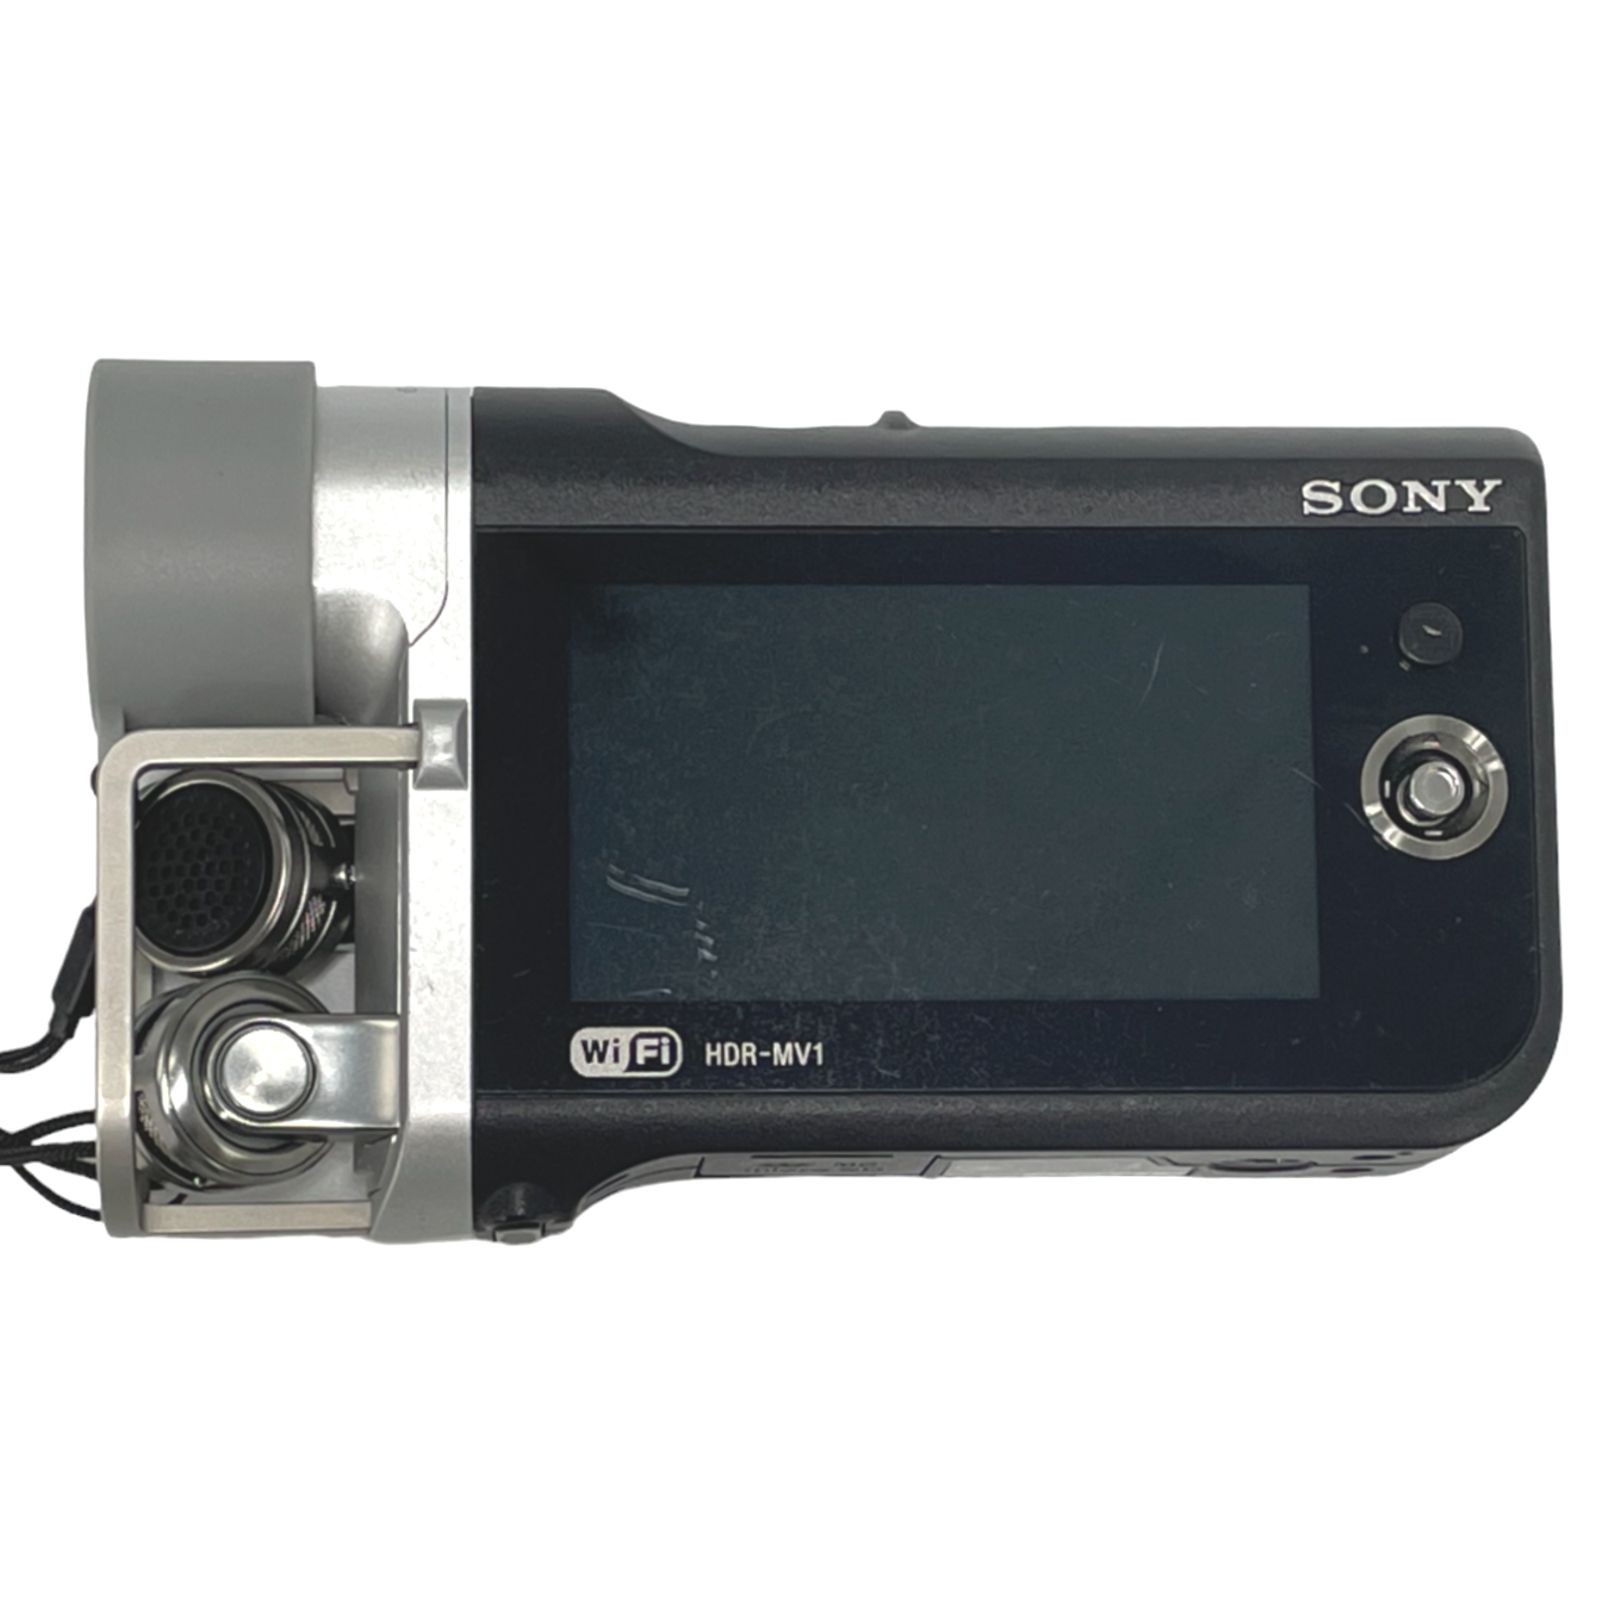 ピンボケします】SONY HDR-MV1 ミュージックビデオレコーダー - カメラ ...